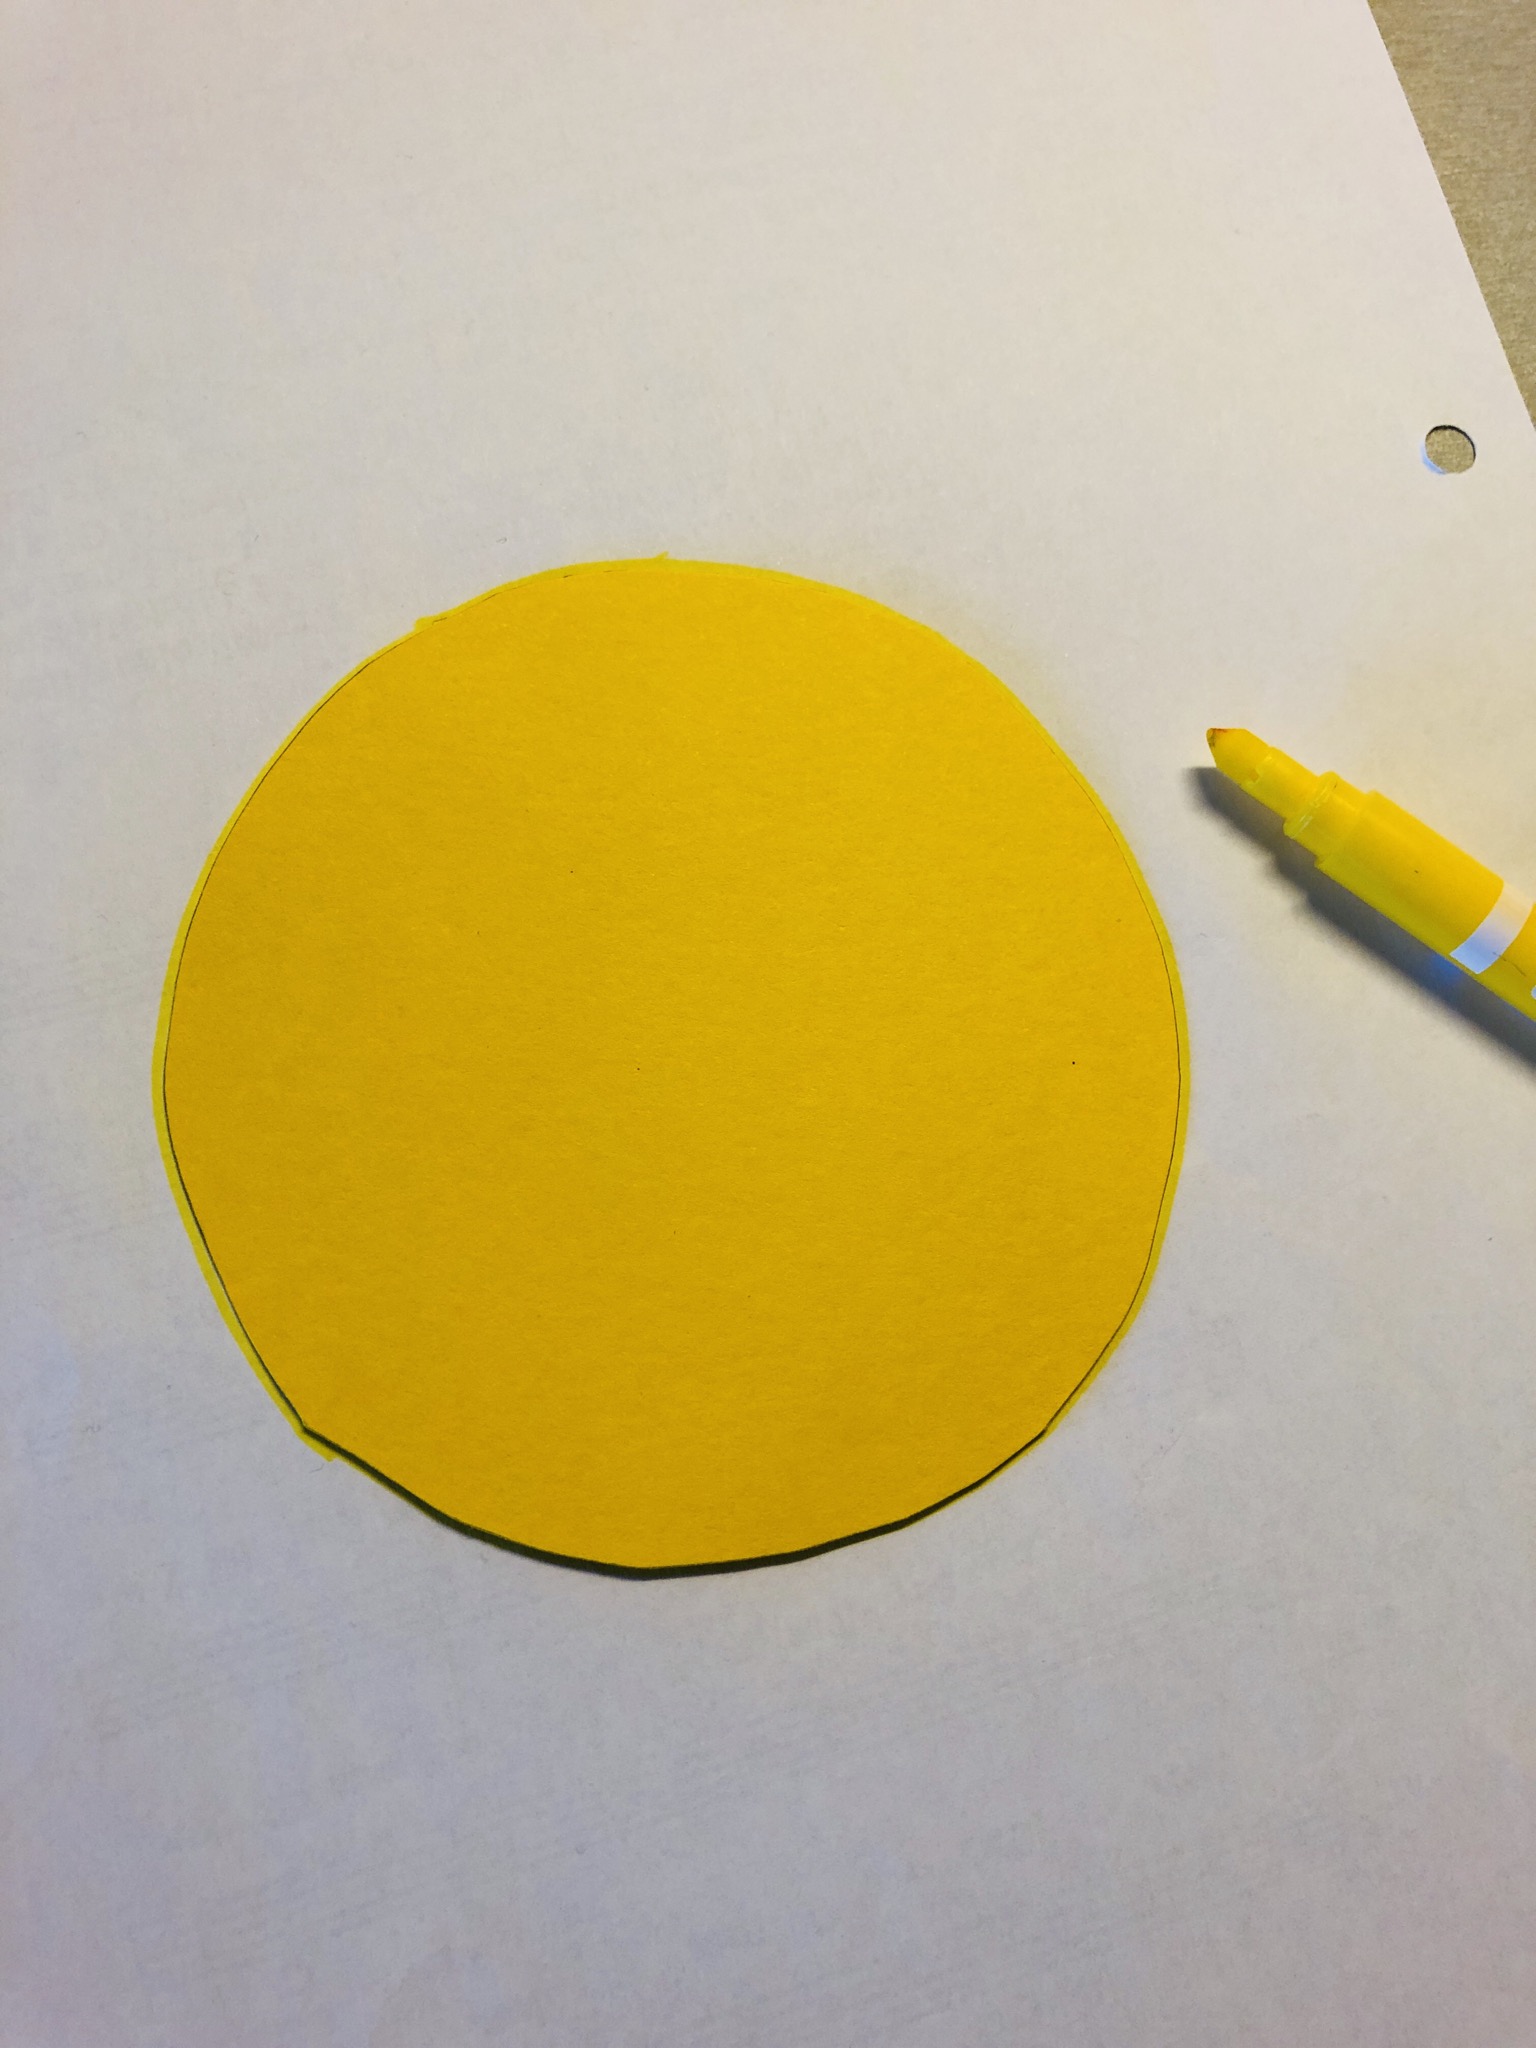 Bild zum Schritt 4 für das Bastel- und DIY-Abenteuer für Kinder: 'Übertragt euren Kreis mit einem gelben Stift auf das weiße...'